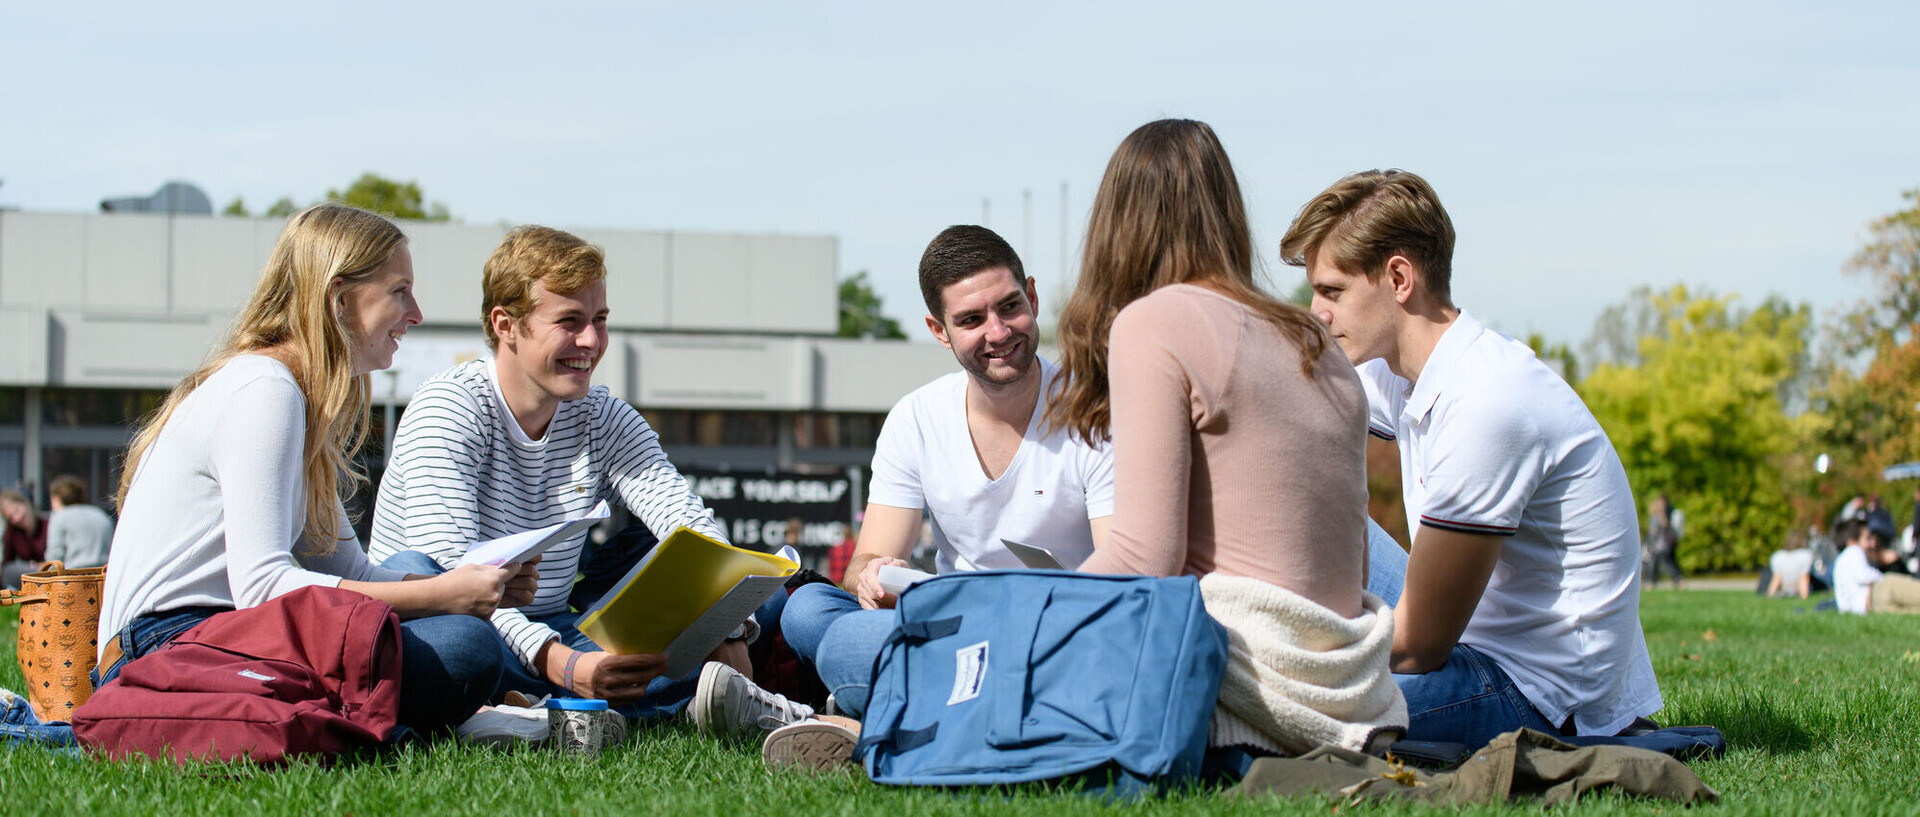 Eine Gruppe von fünf Studierenden sitzt gut gelaunt in einem Kreis auf der Mensawiese. In ihren Händen haben sie Blöcke oder Laptops, neben ihnen stehen Rucksäcke.